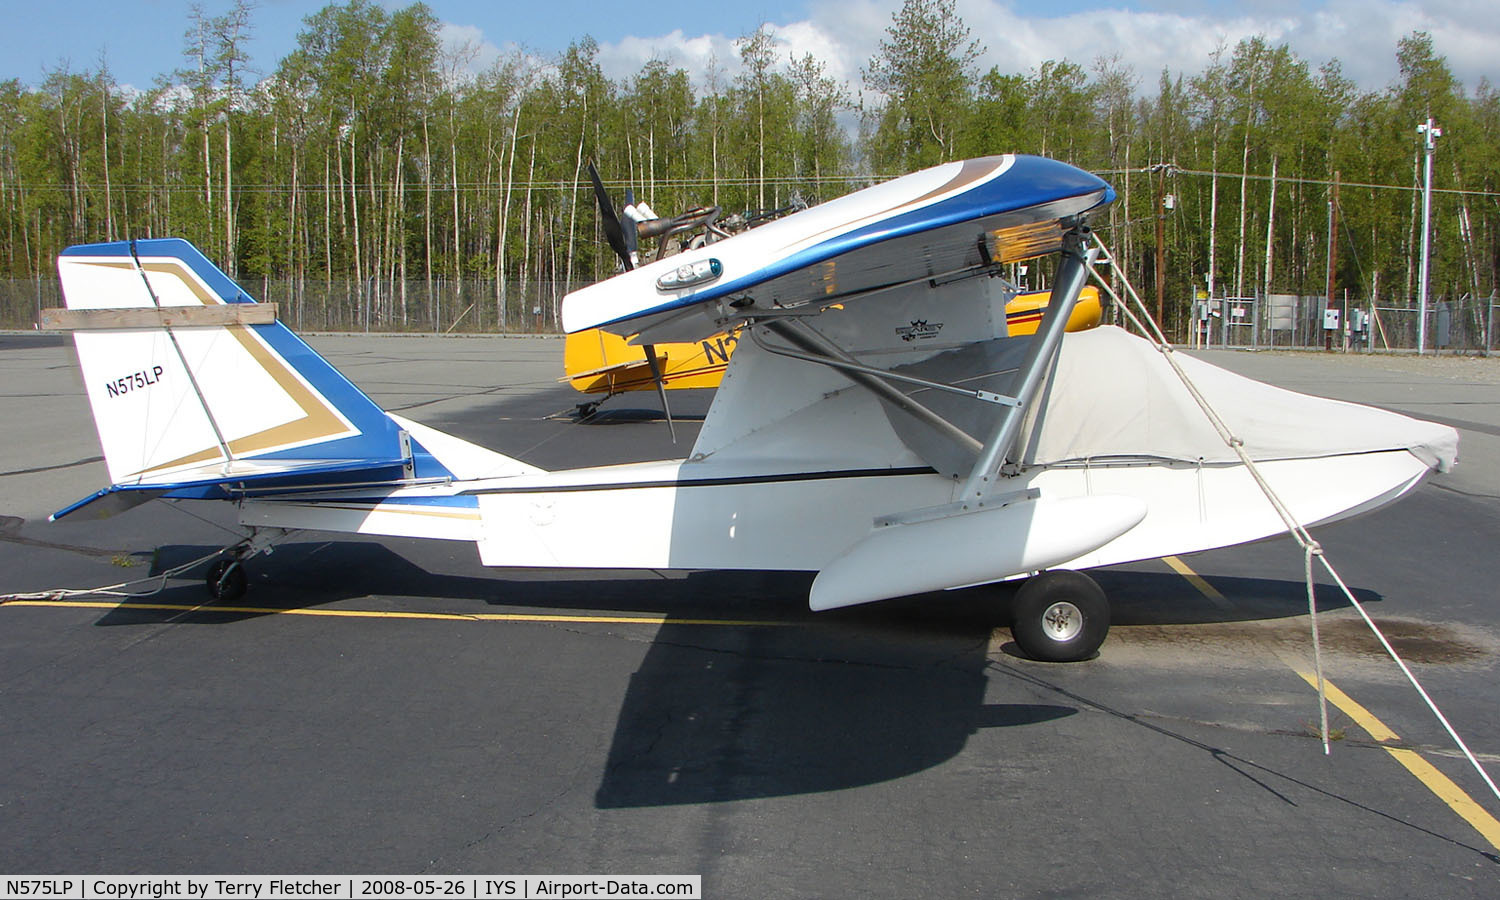 N575LP, 2002 Progressive Aerodyne Searey C/N 1MK270C, A new type for me